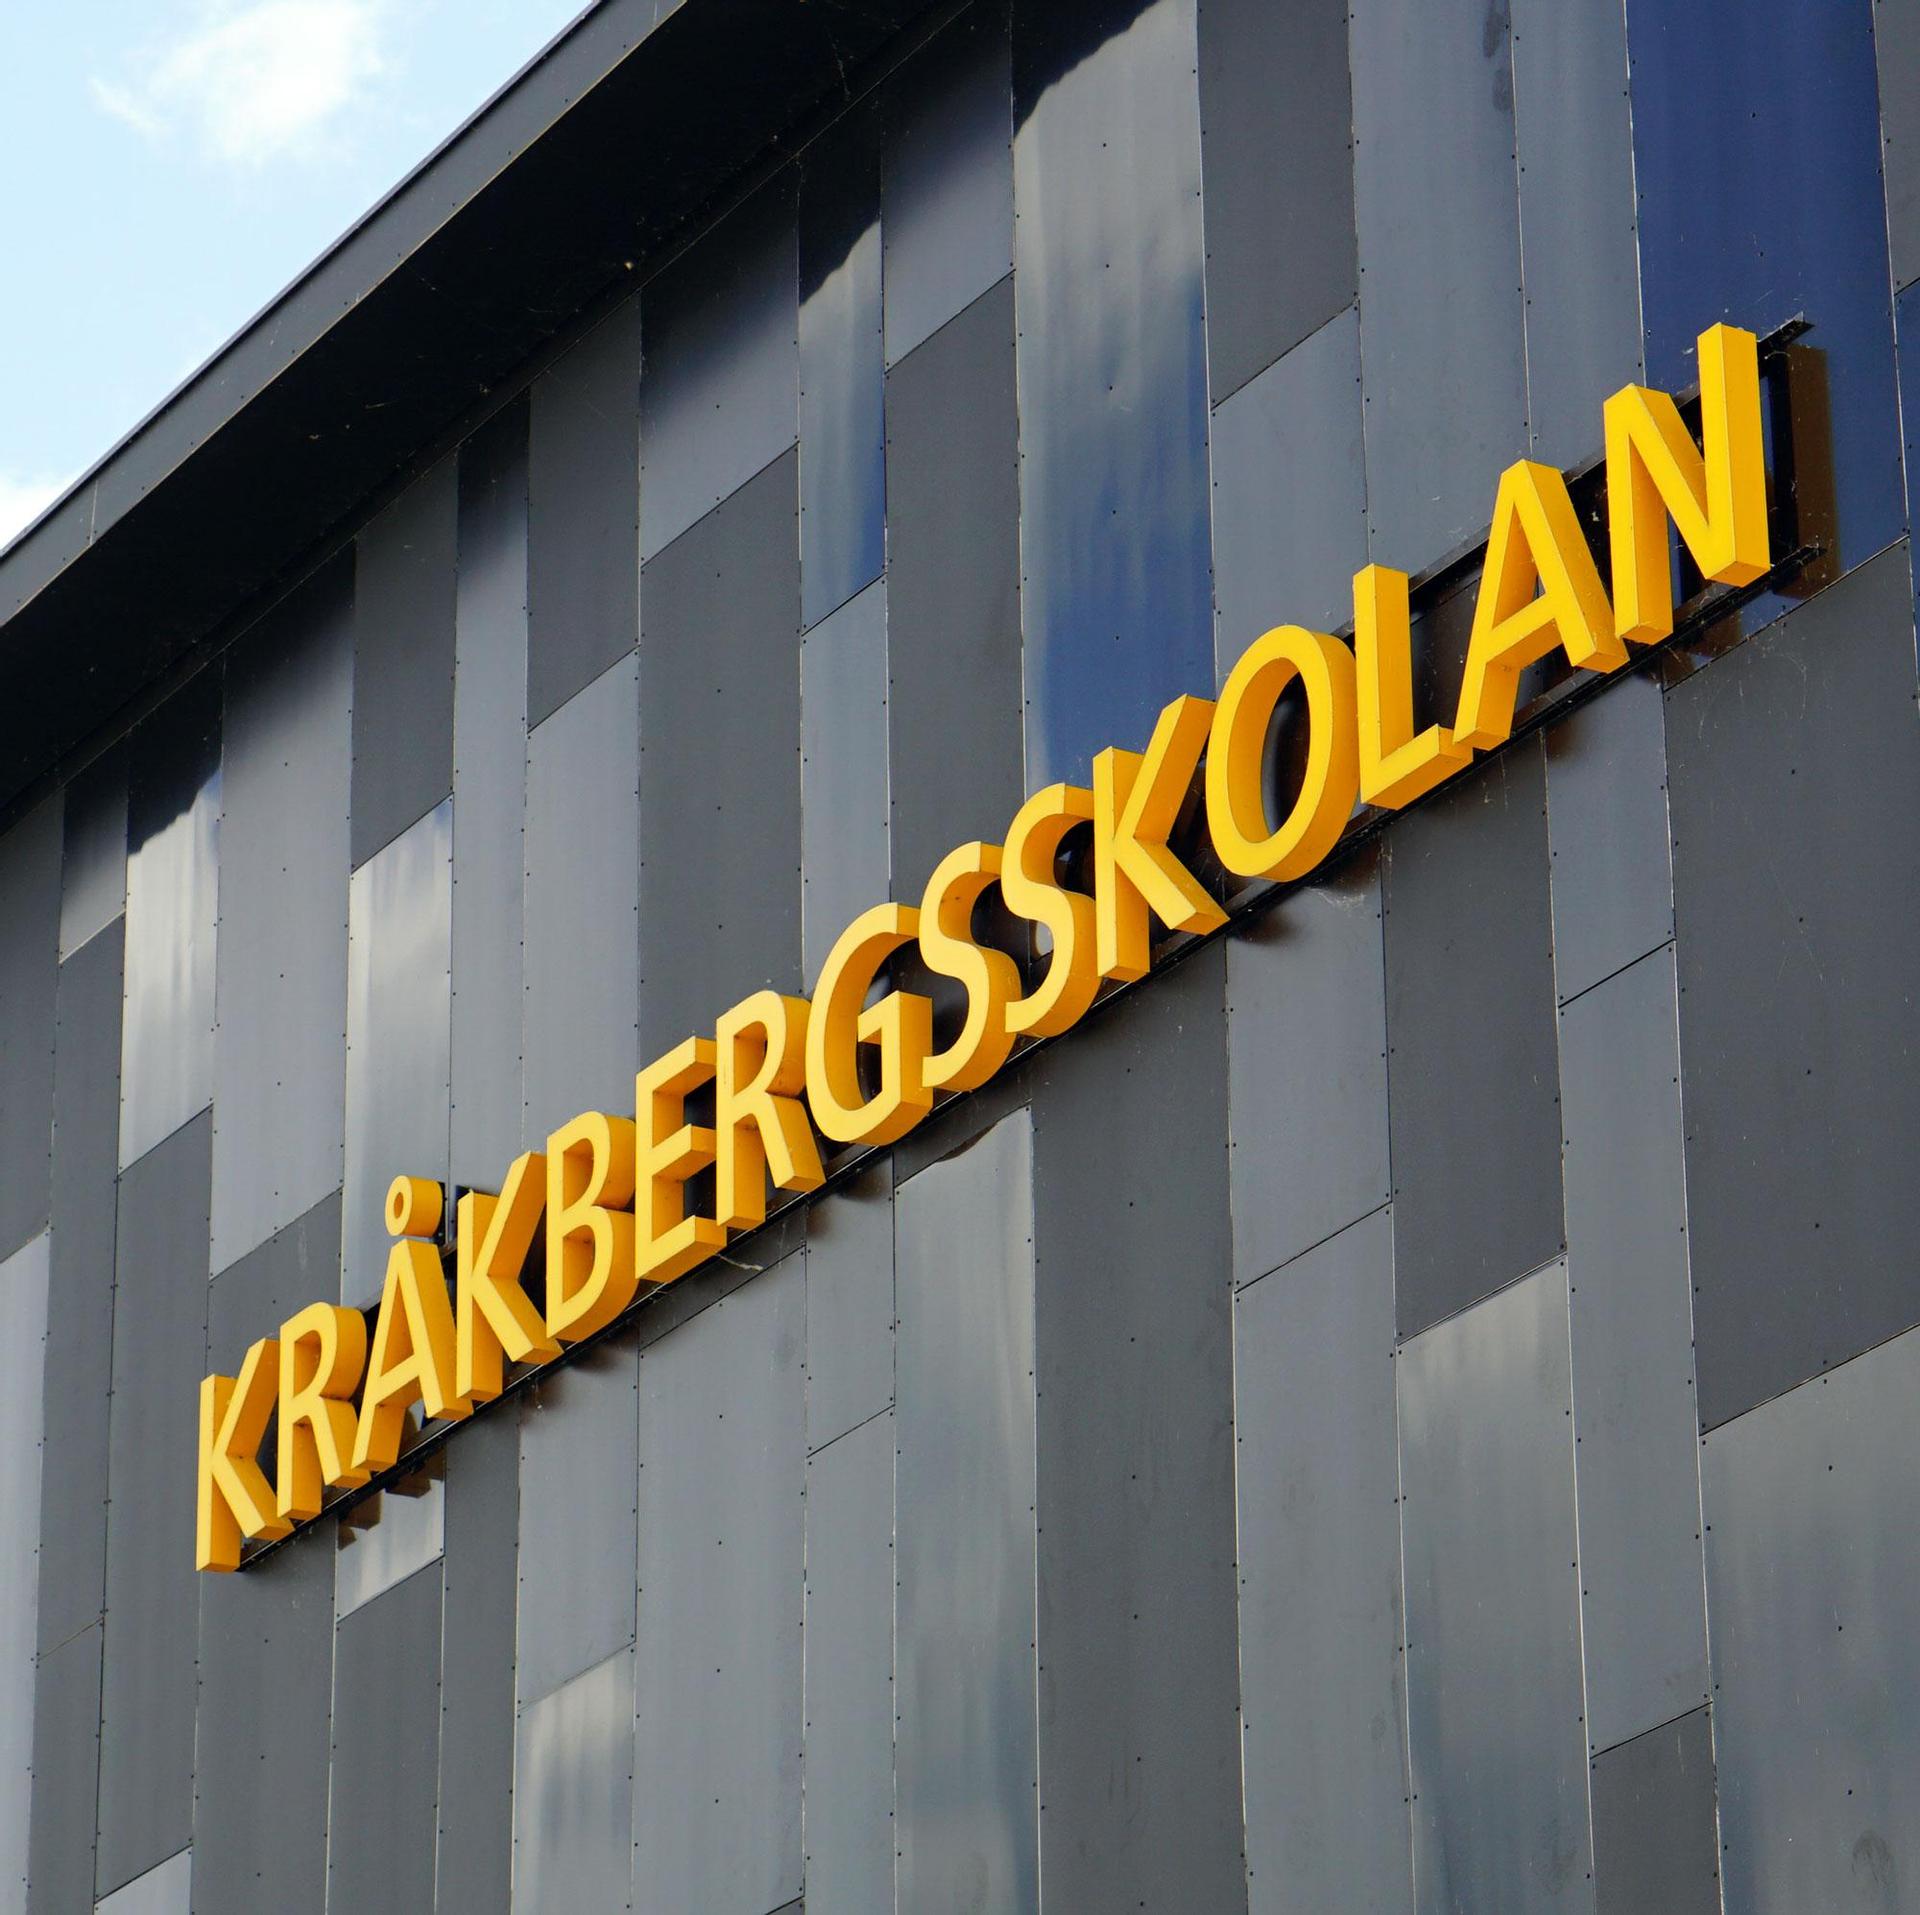 Kråkbergsskolan